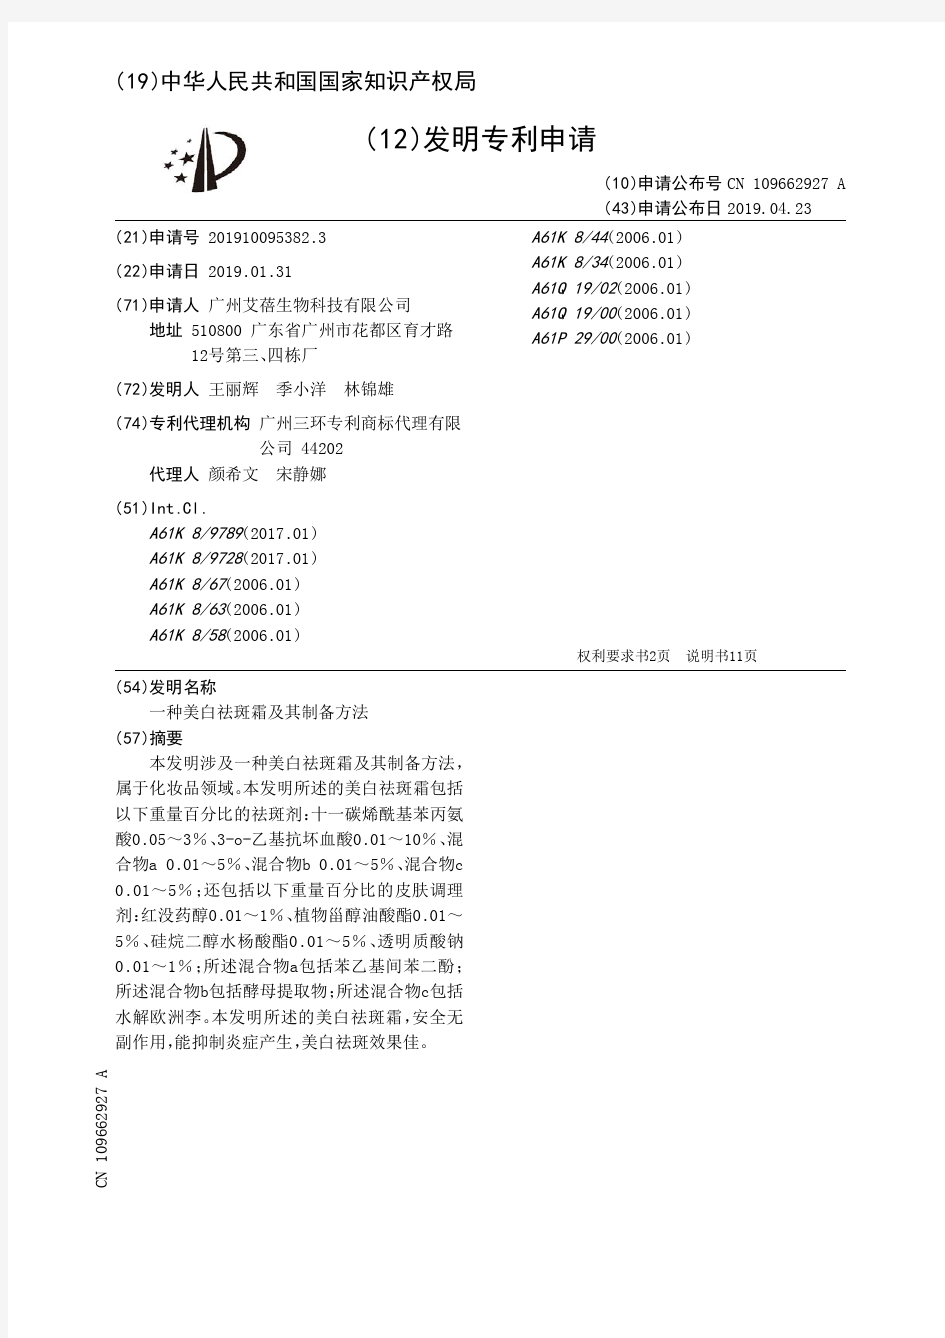 【CN109662927A】一种美白祛斑霜及其制备方法【专利】